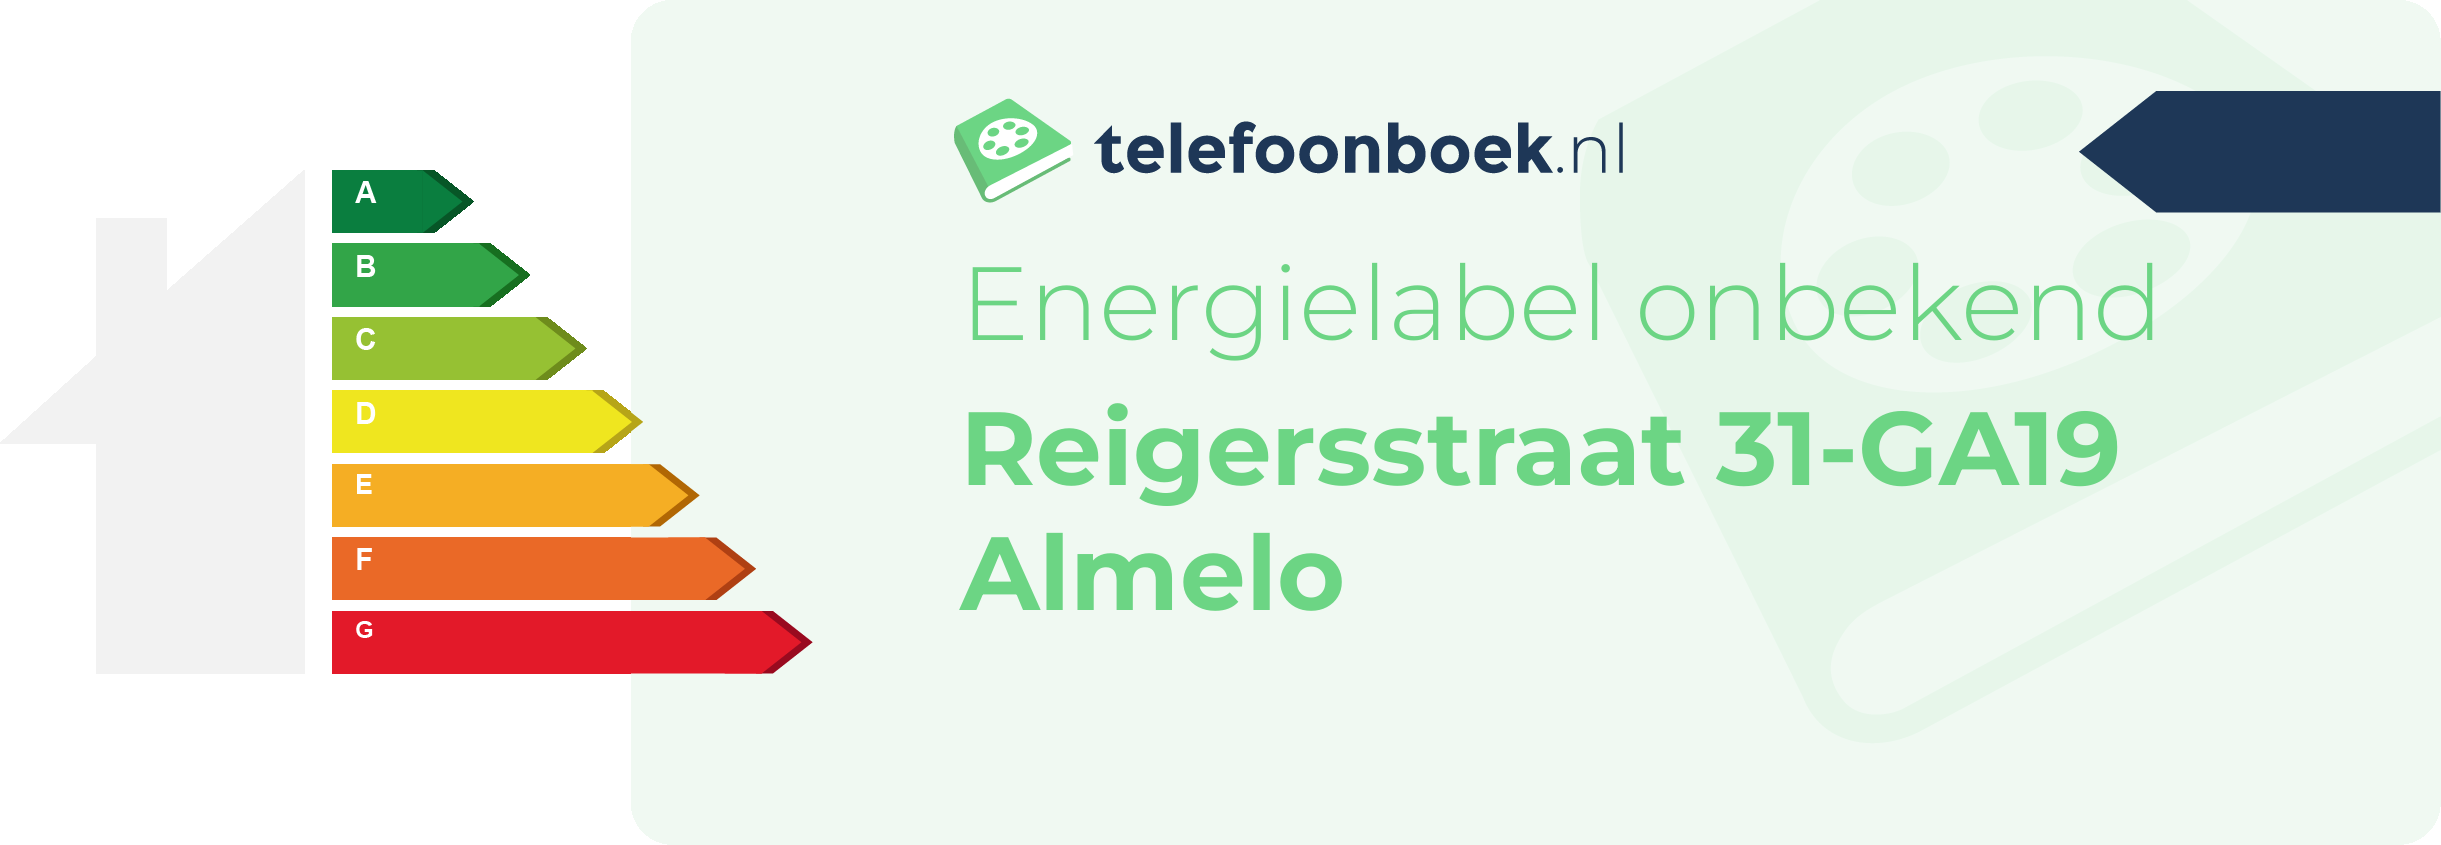 Energielabel Reigersstraat 31-GA19 Almelo